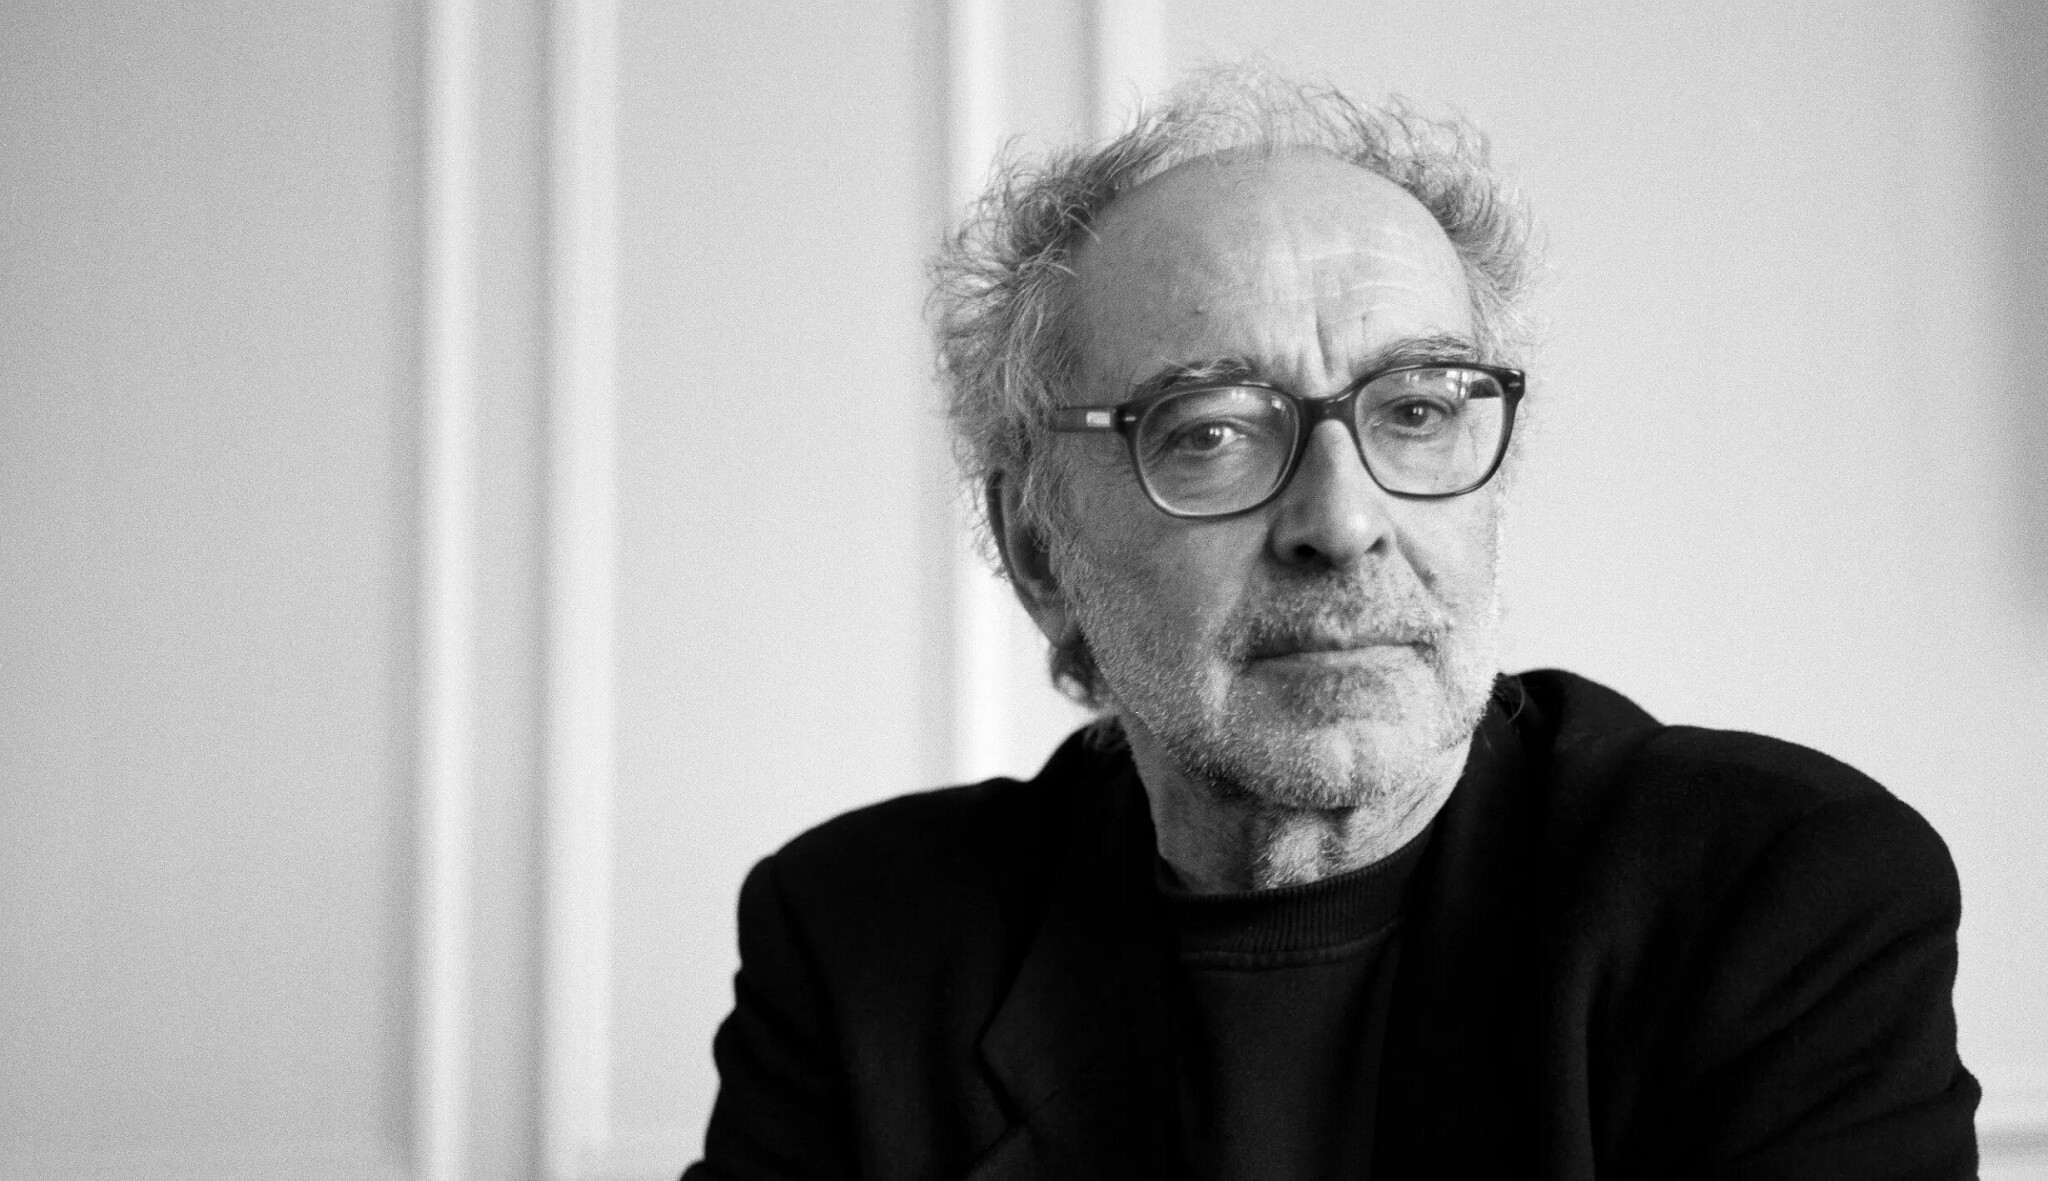 Zemřel režisér Jean-Luc Godard. Představiteli francouzské nové vlny bylo 91 let